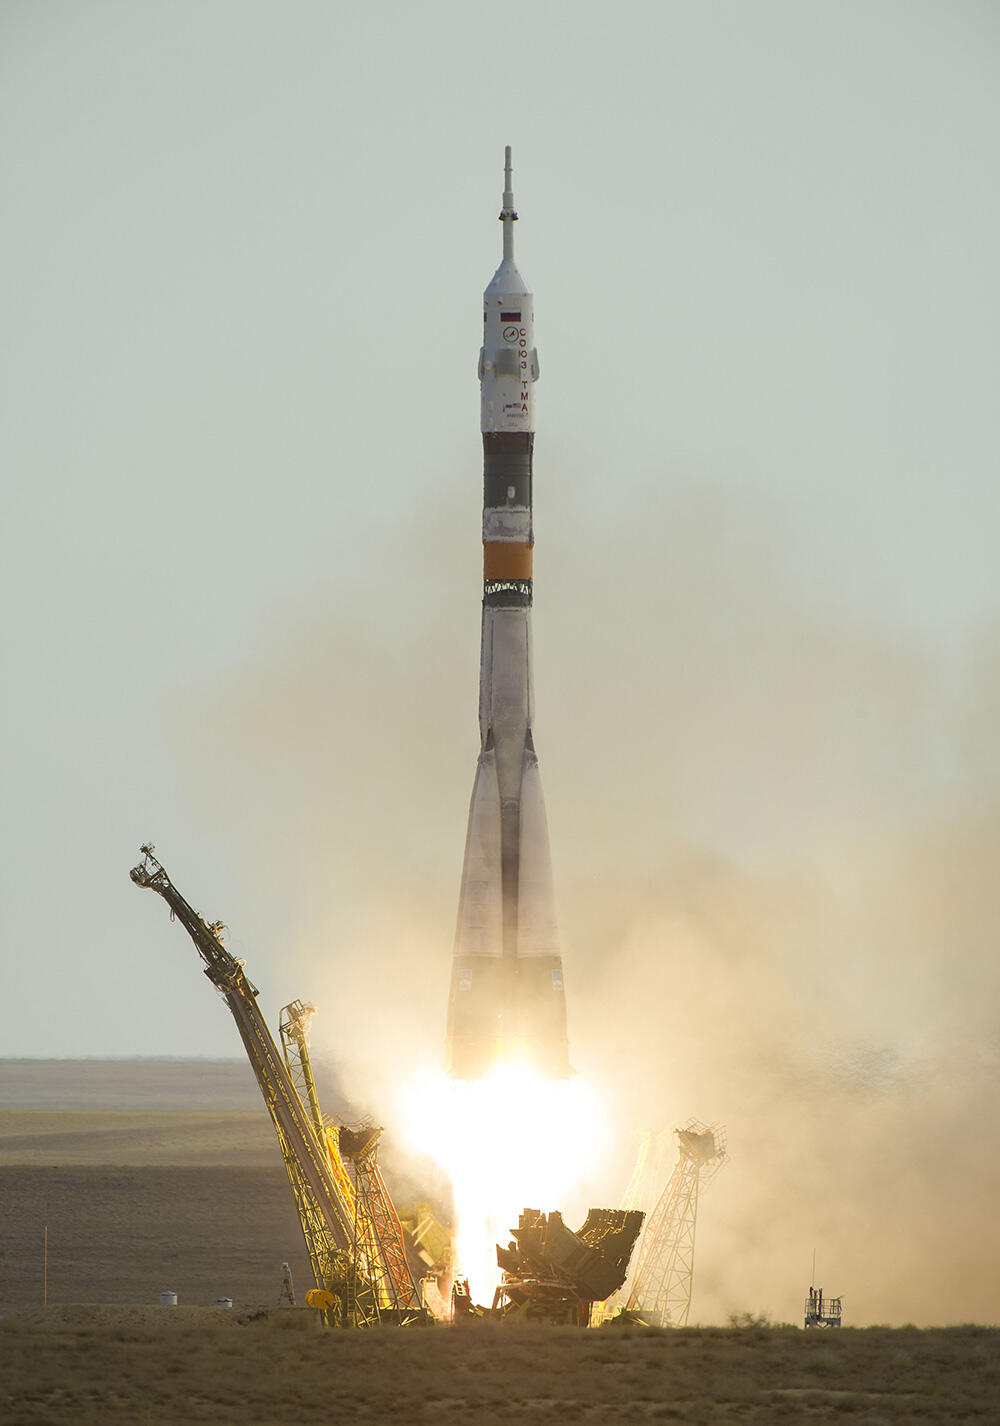 星出宇宙飛行士らが搭乗したソユーズ宇宙船の打ち上げ。